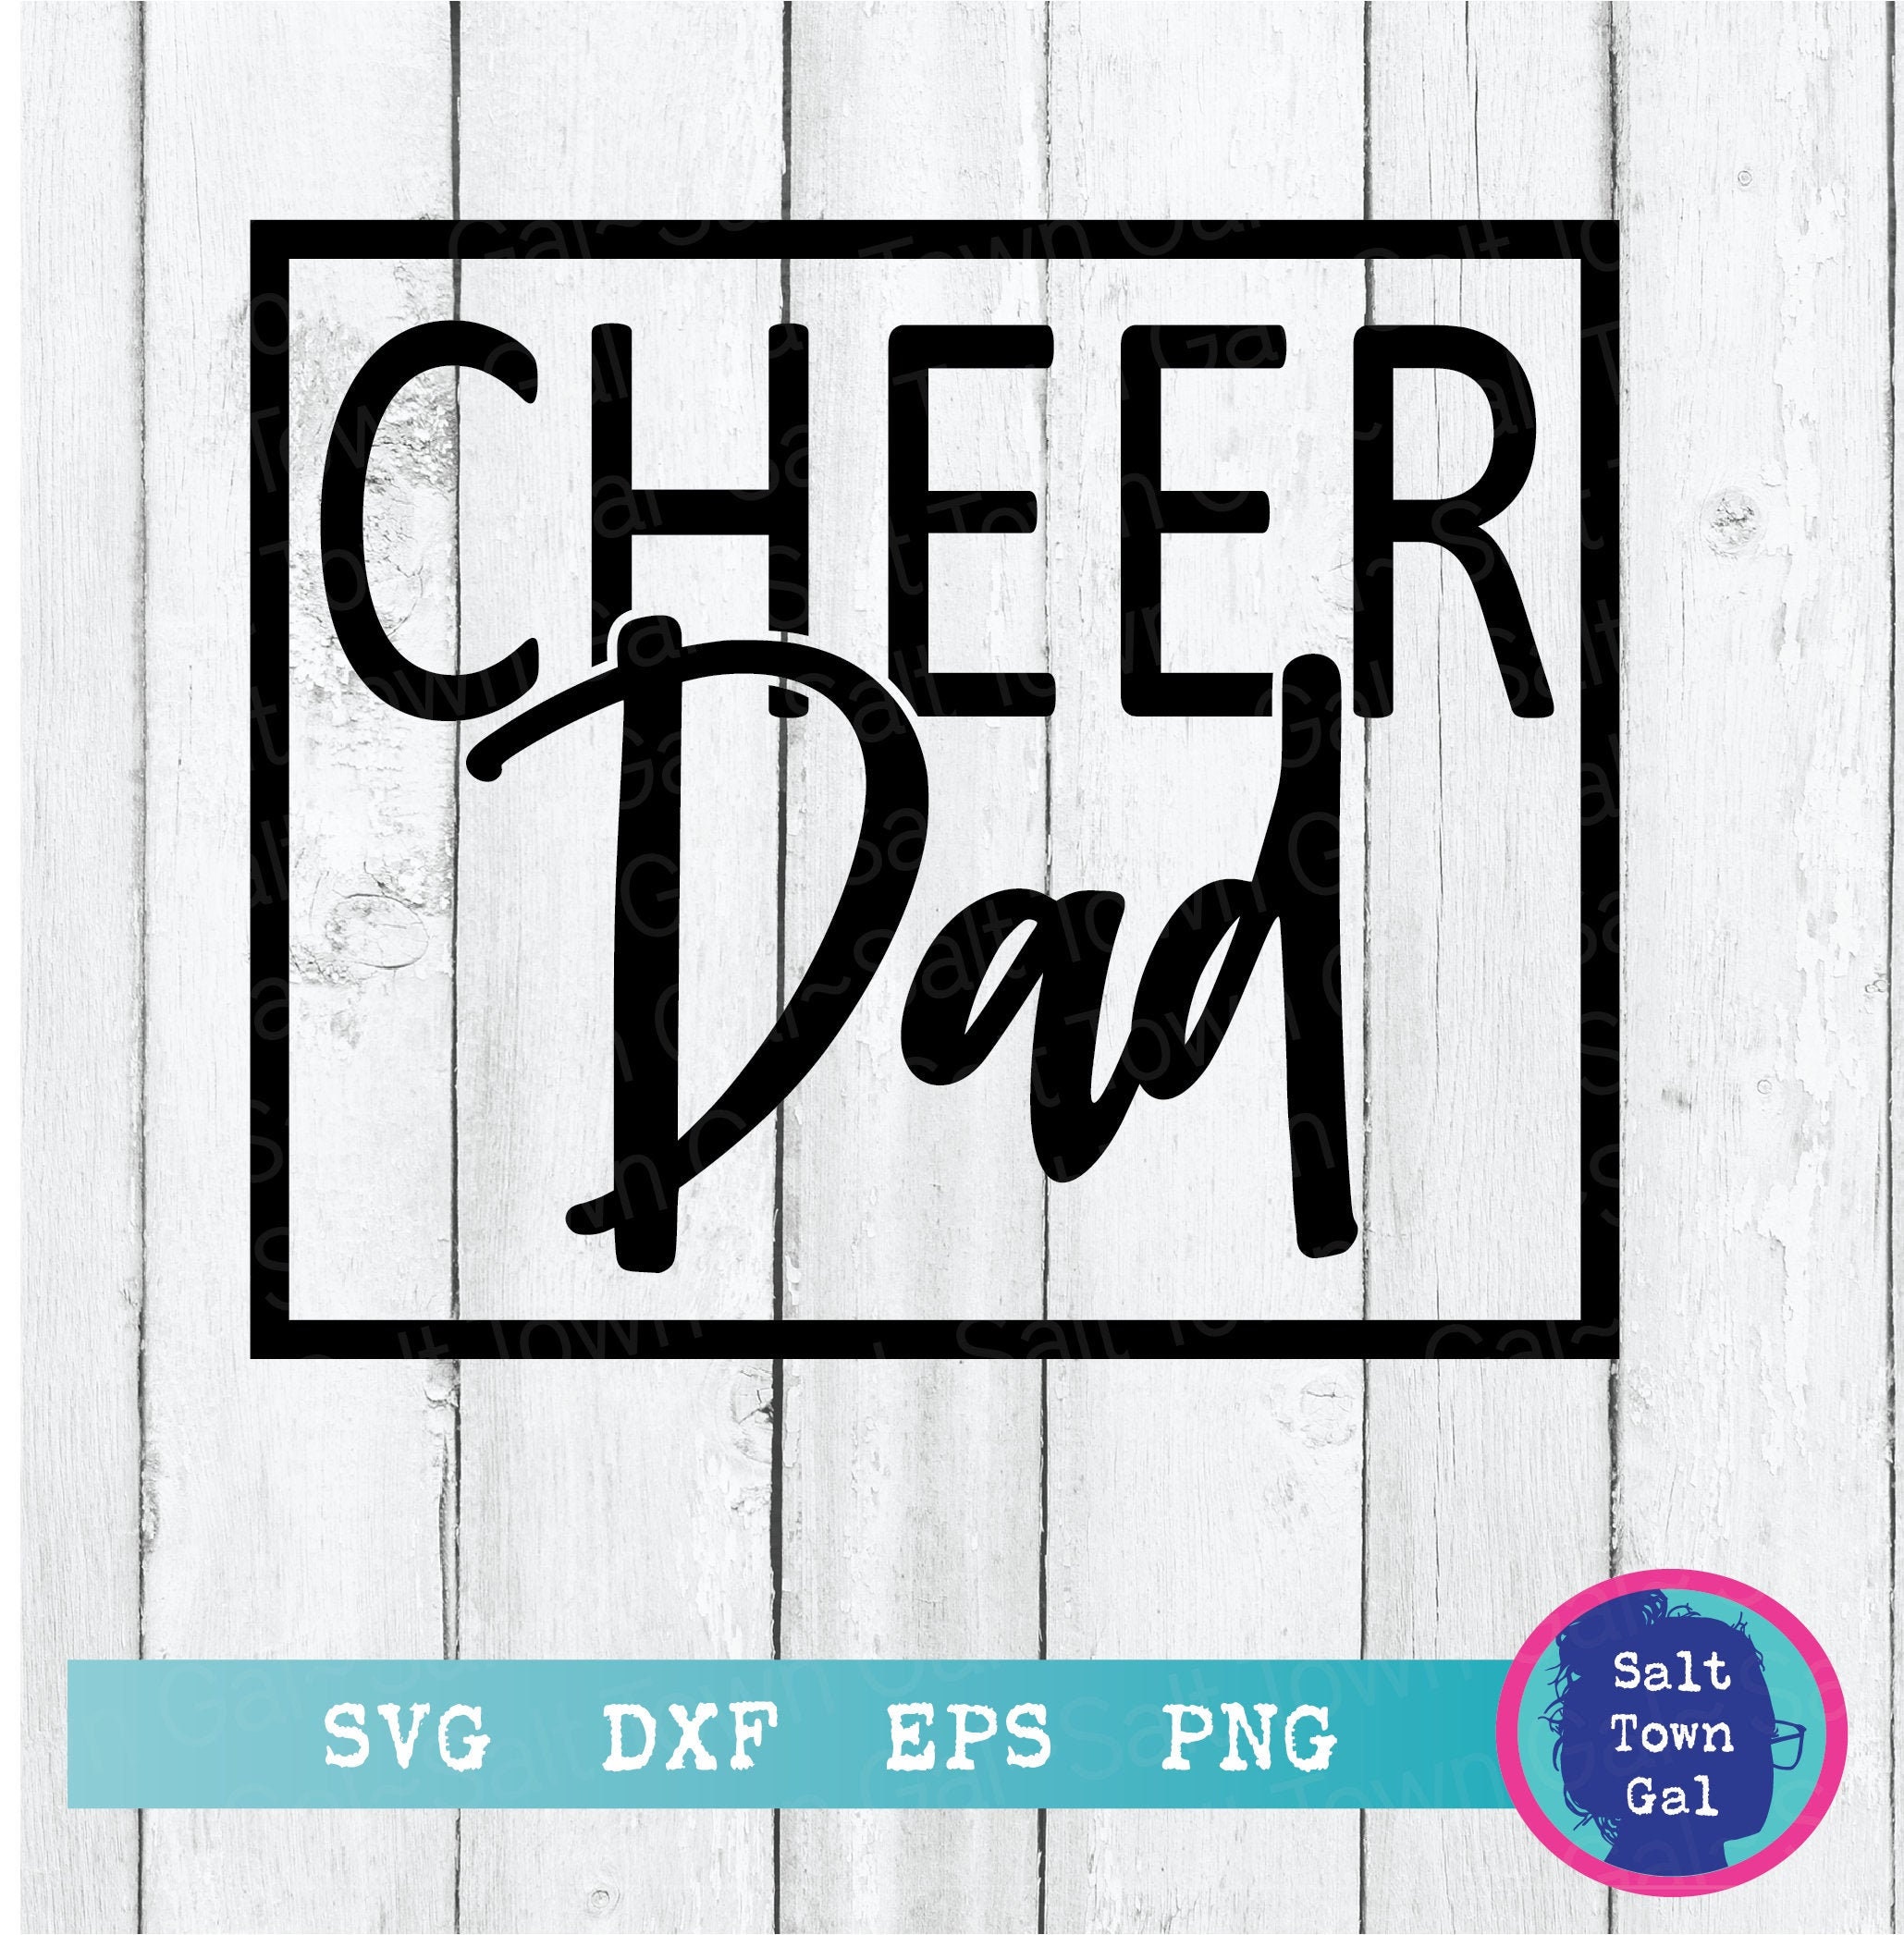 Cheer Dad Svg-cheer Dad Decal Svg-cheer Dad Shirt Svg-cheer - Etsy